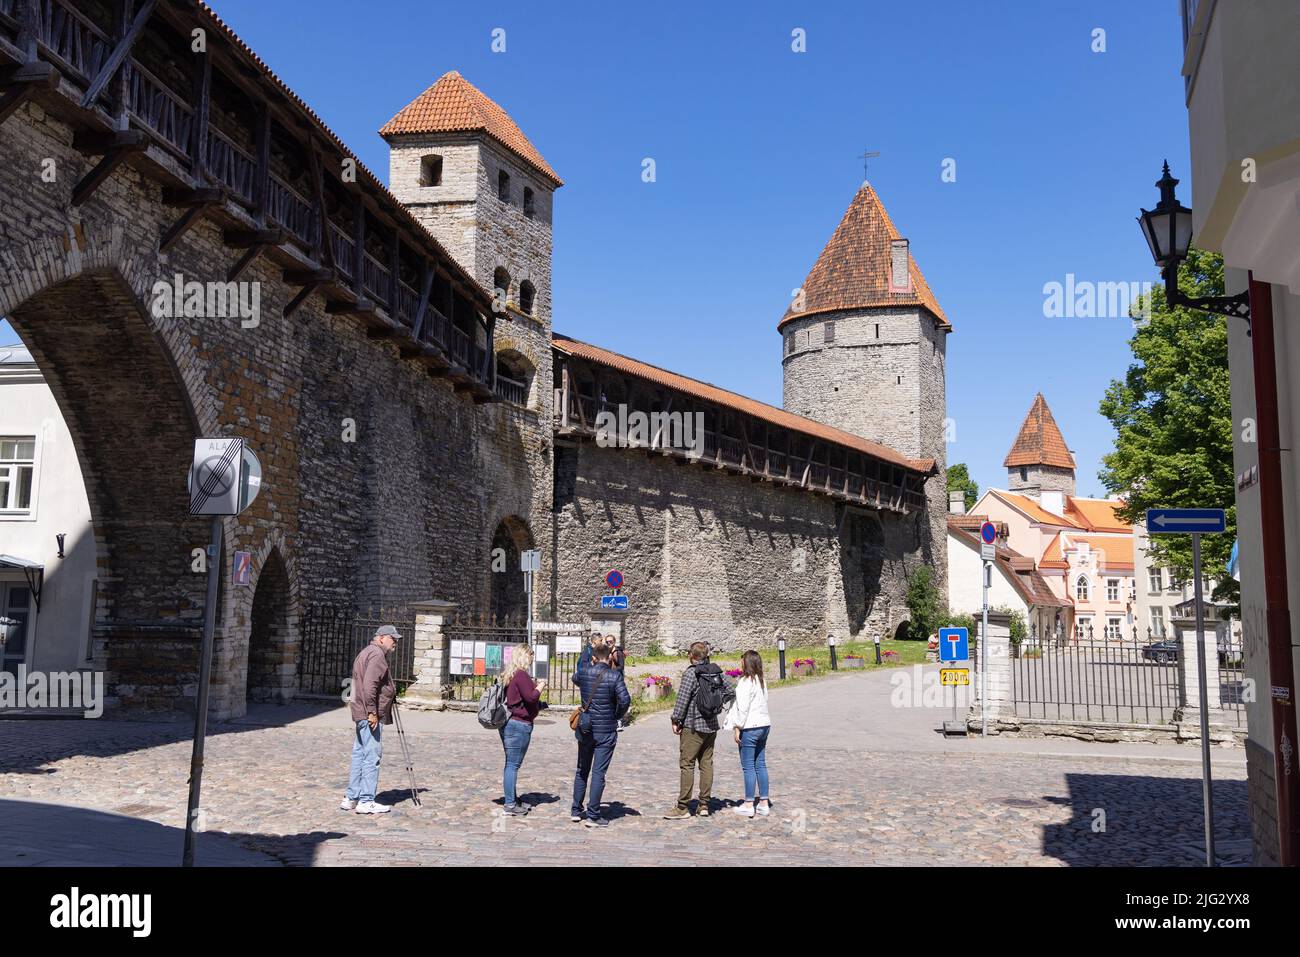 Persone alle mura della città di Tallinn, una sezione delle fortificazioni medievali del 14th ° secolo, tra cui la Torre delle monache, la città vecchia di Tallinn, Tallinn Estonia Foto Stock